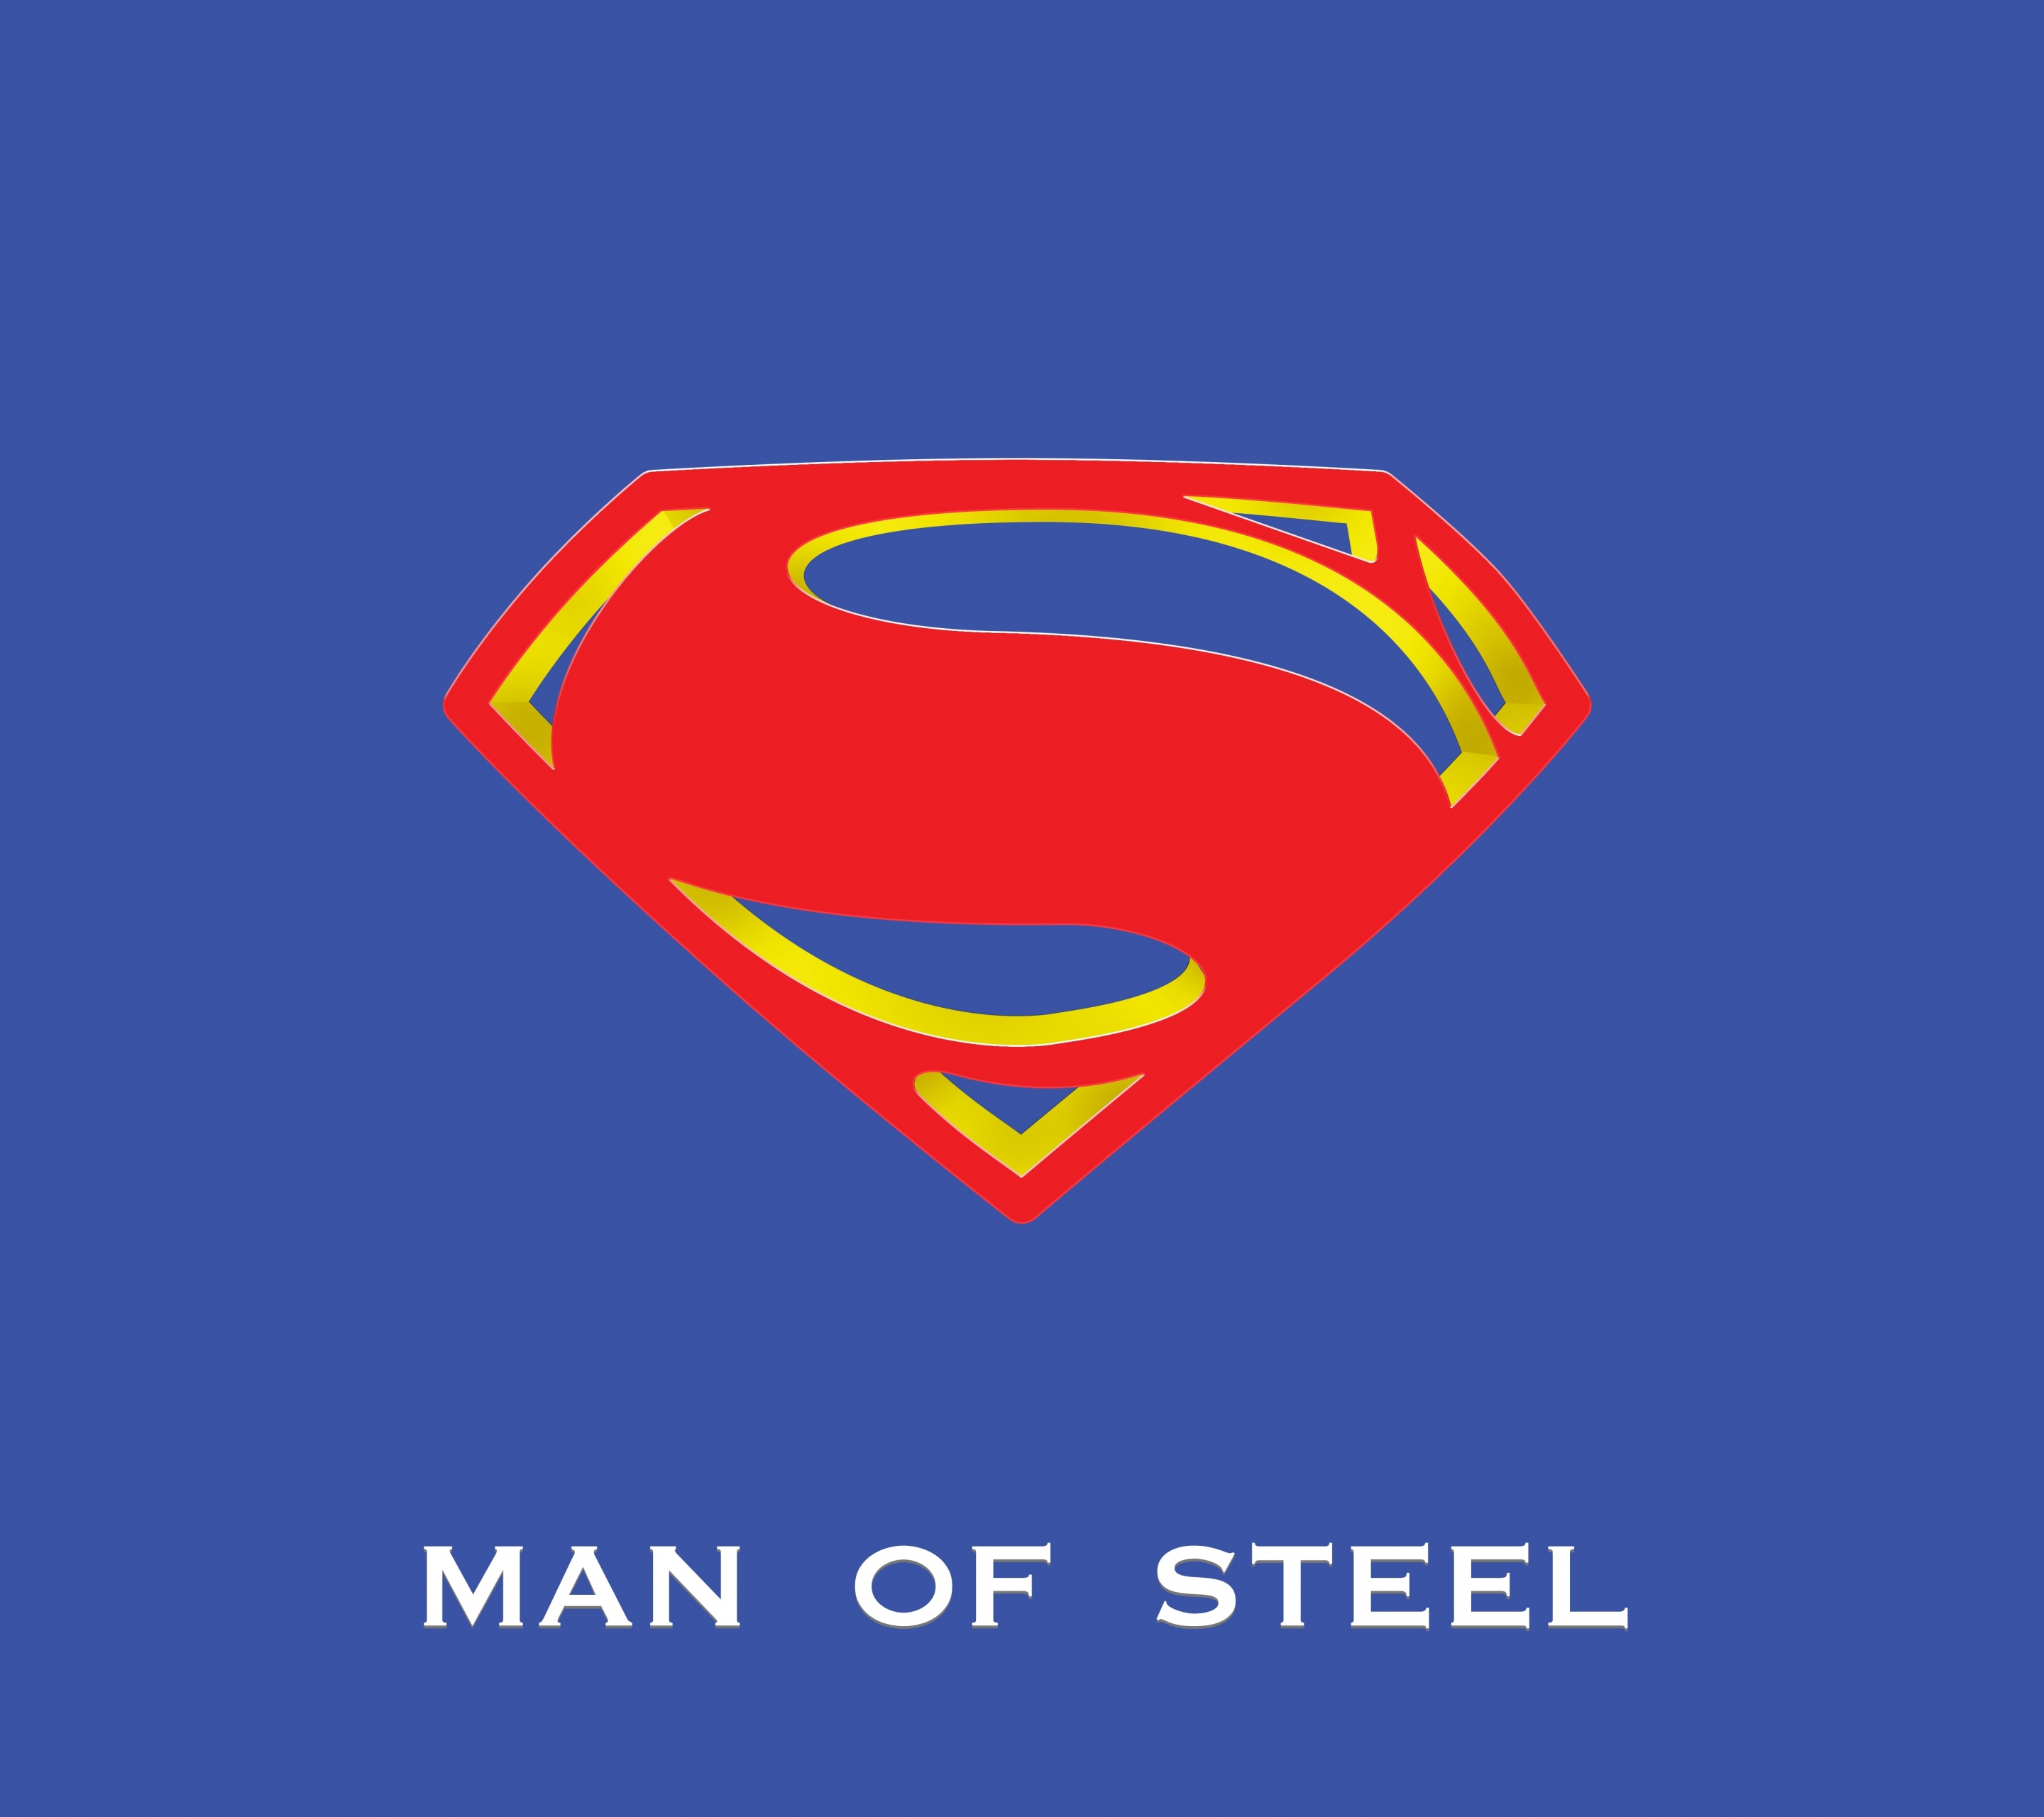 Скачать обои бесплатно Кино, Супермен, Логотип Супермена, Человек Из Стали картинка на рабочий стол ПК